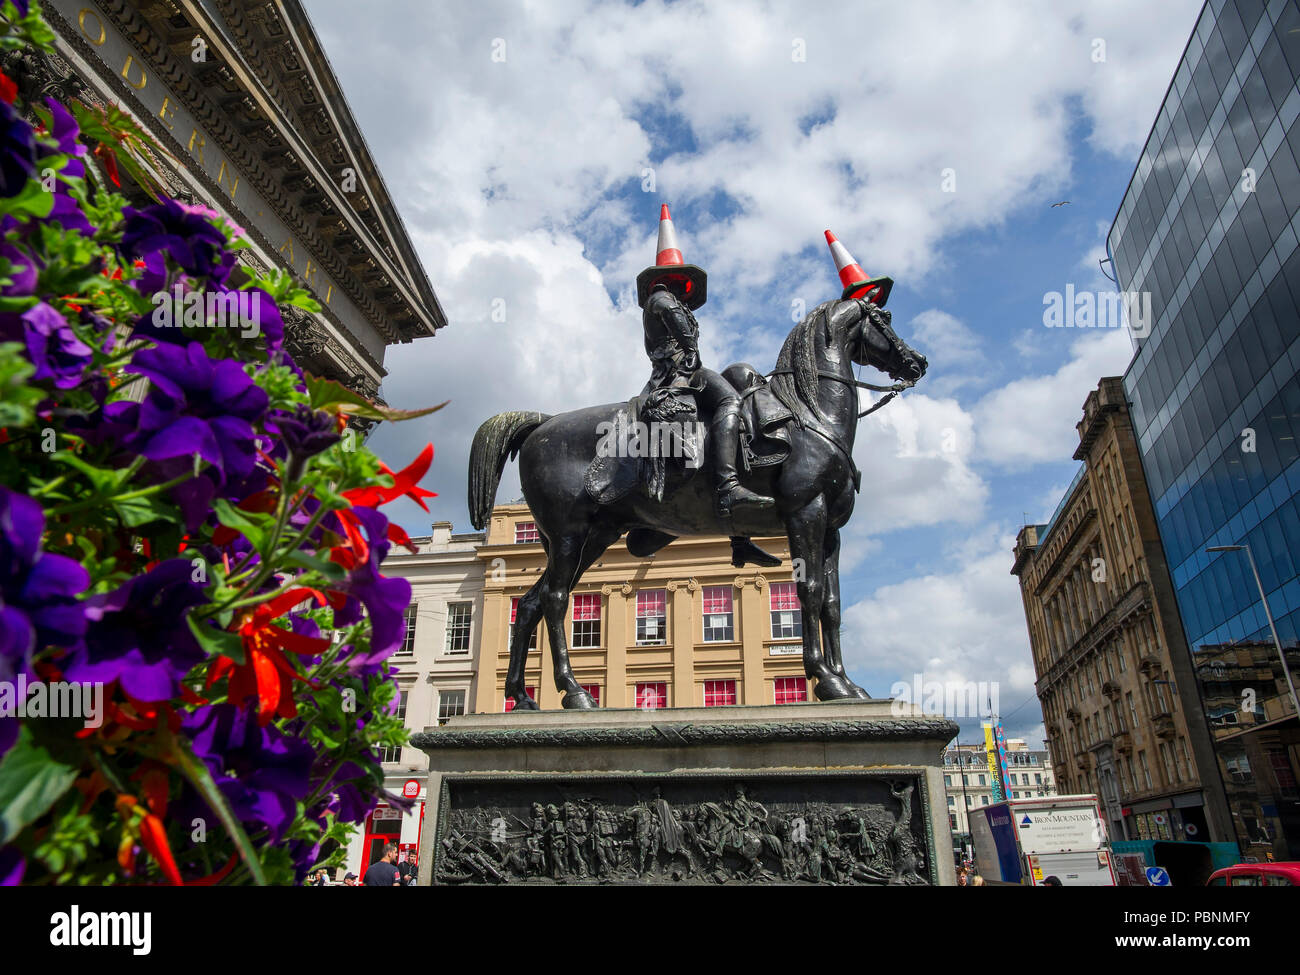 El Wellington estatua ecuestre es una estatua de Arthur Wellesley, primer duque de Wellington, situado en el Royal Exchange Square en Glasgow, Escocia. Foto de stock